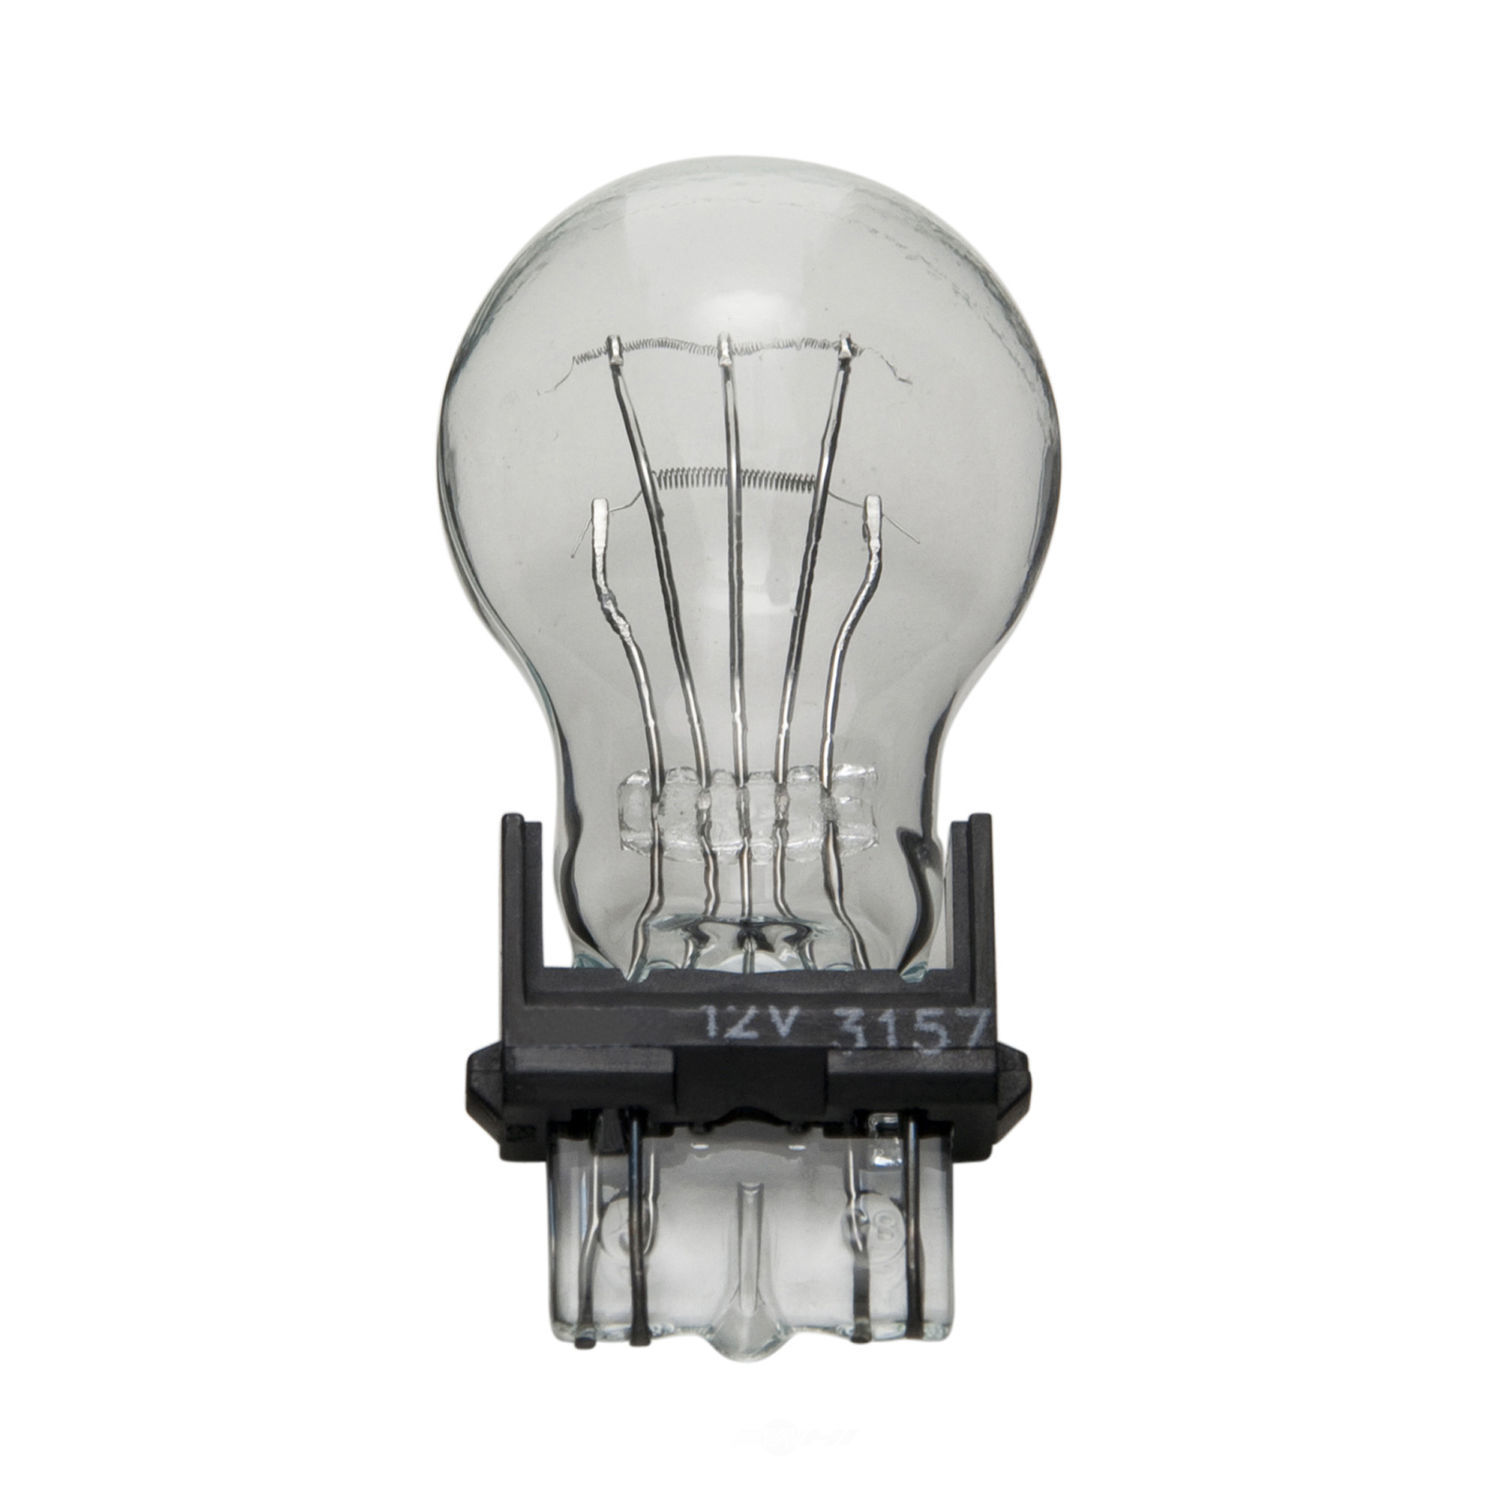 WAGNER LIGHTING - Miniature Lamp Boxed Brake Light - WLP 3157